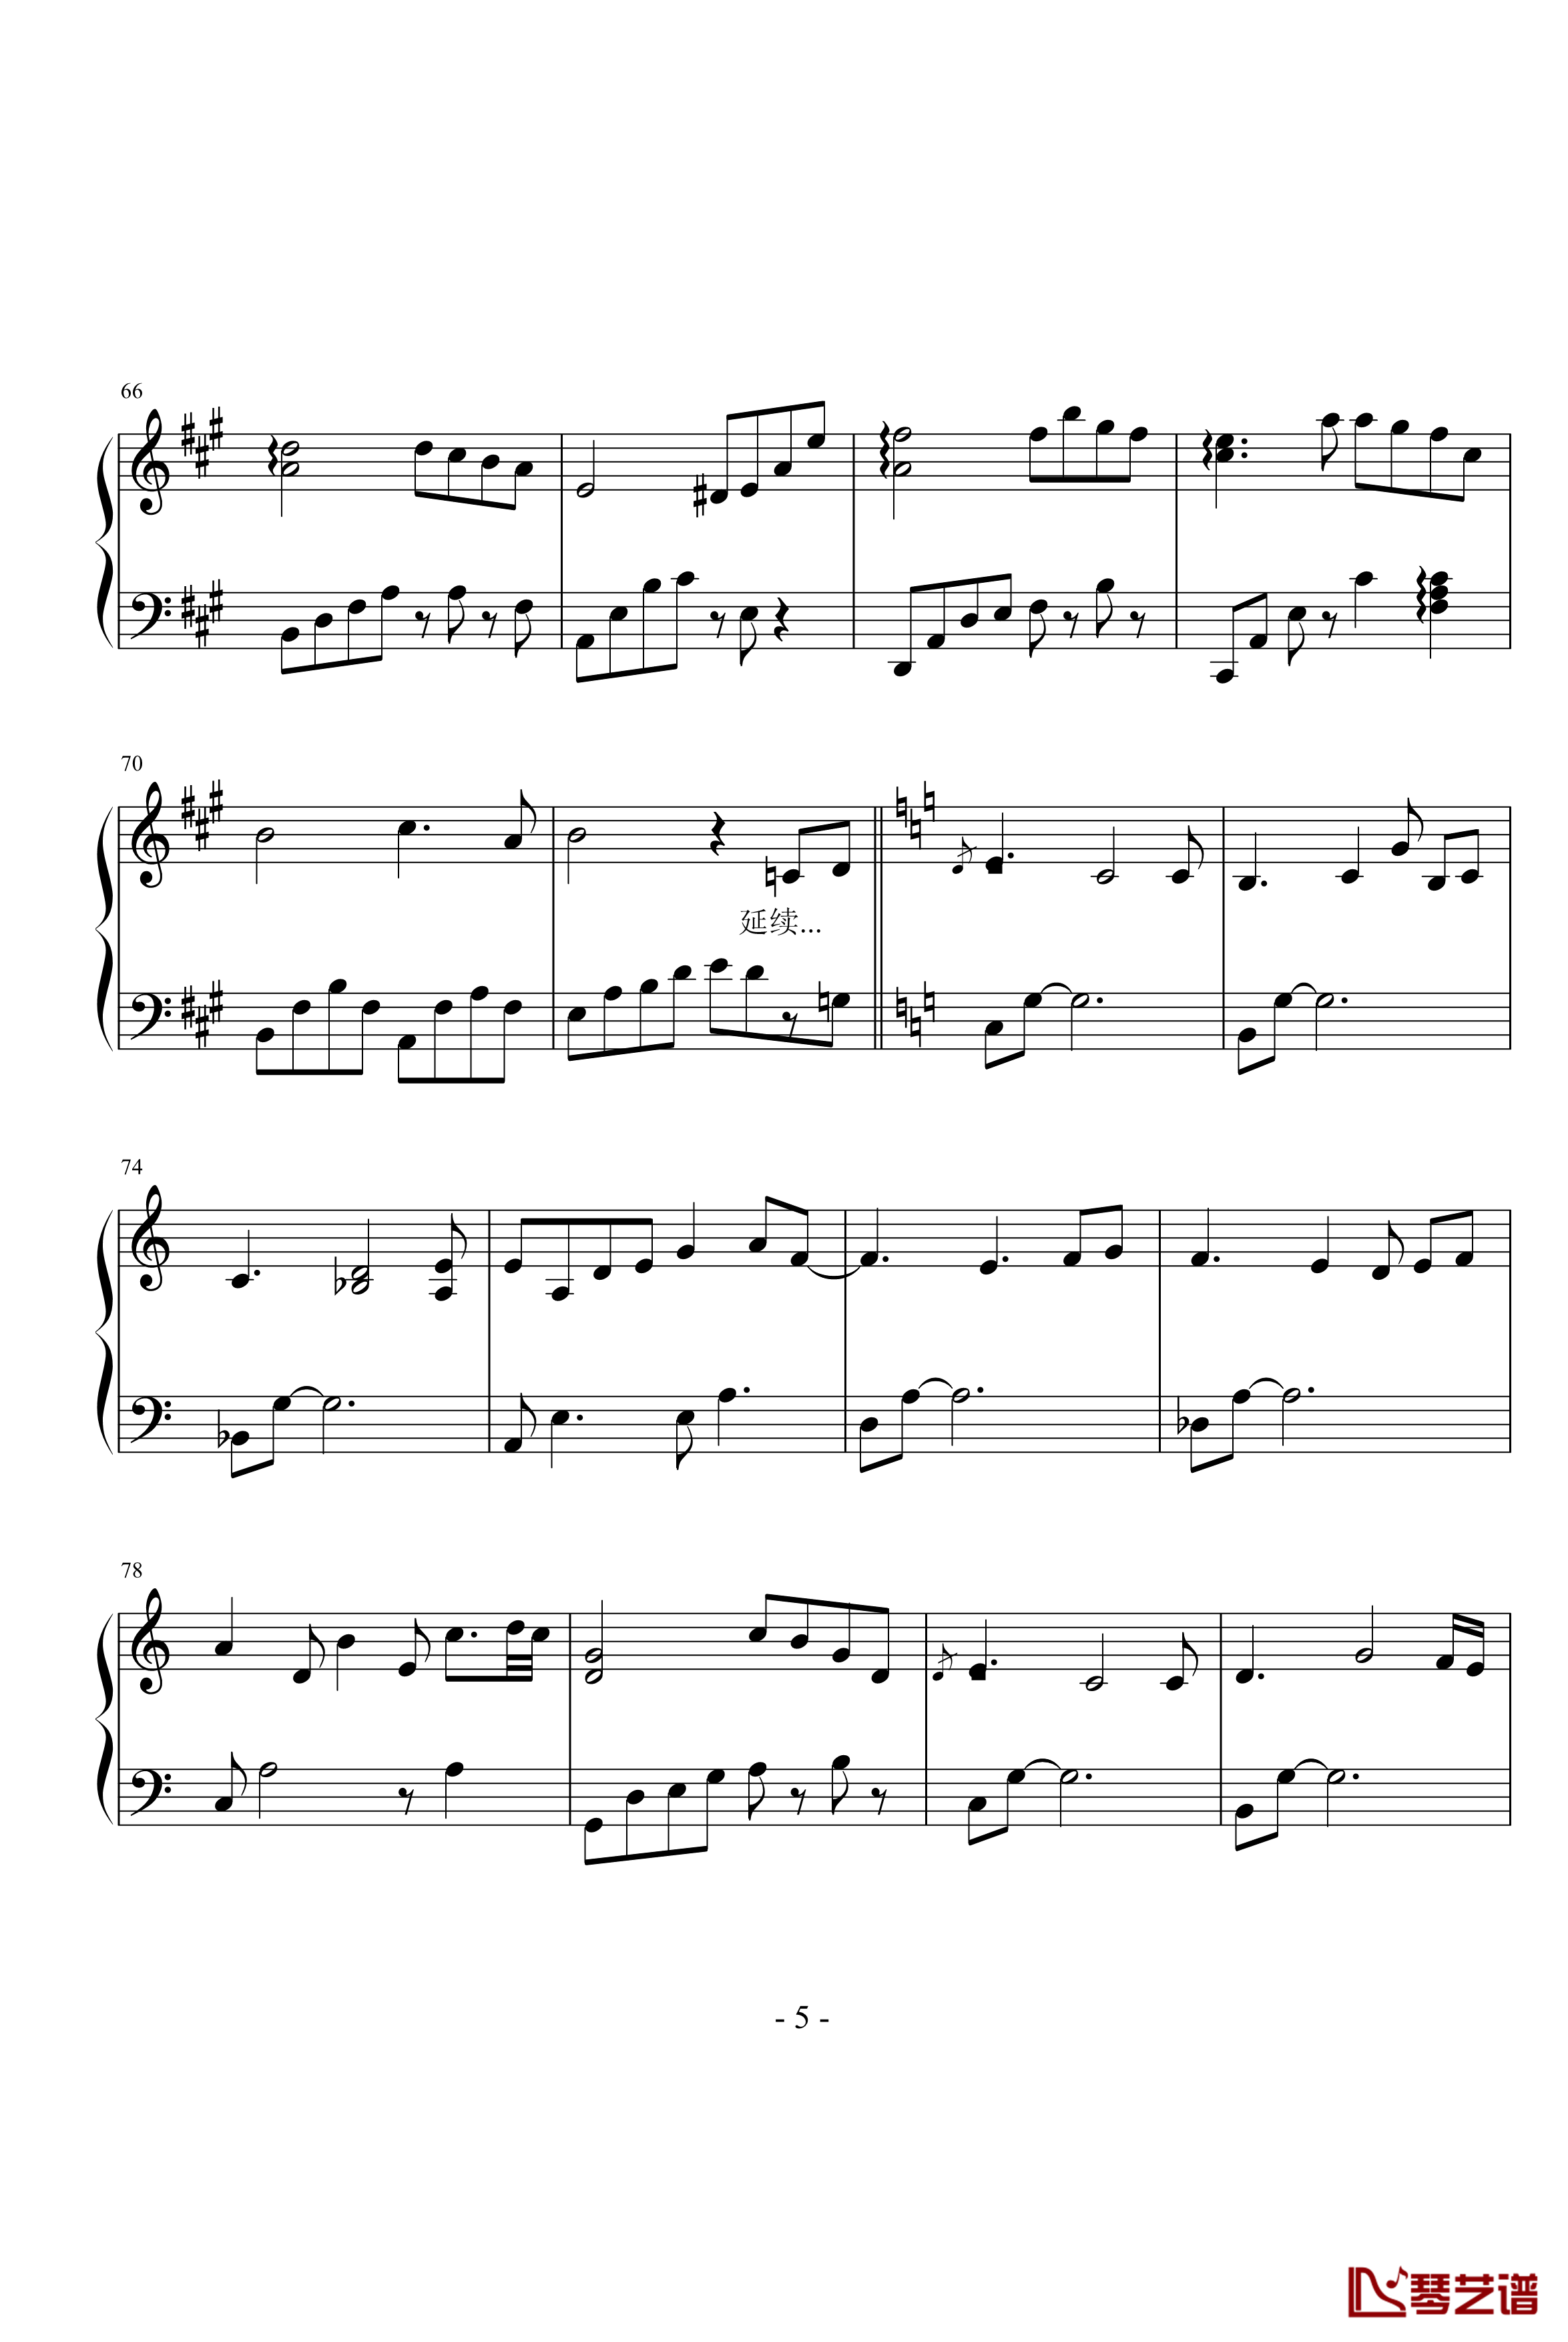 雪剑钢琴曲Op12钢琴谱-落花吹雪剑5